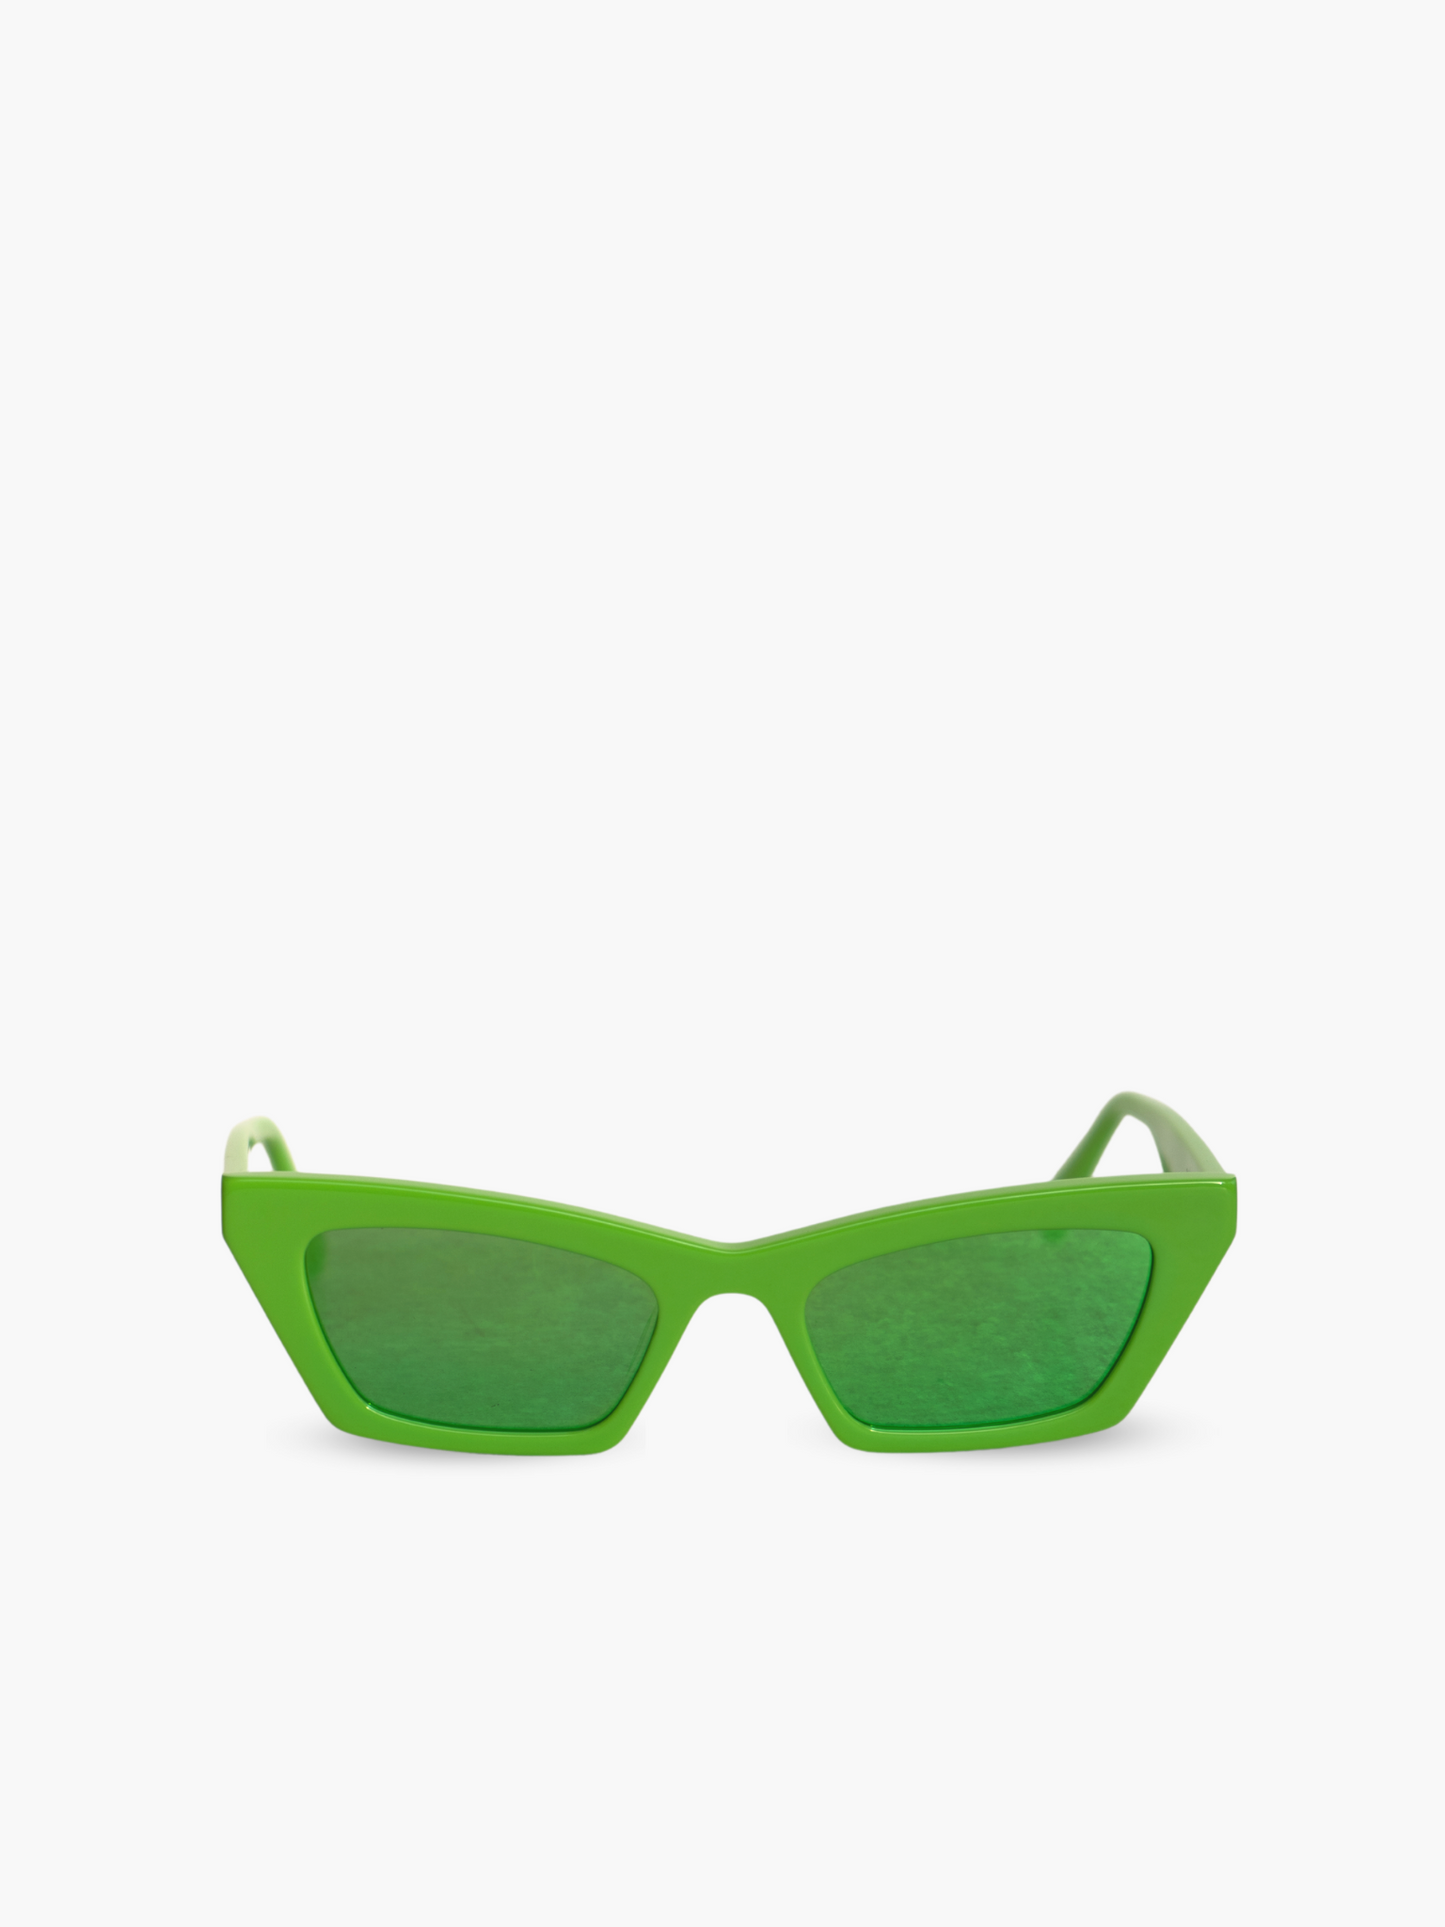 Occhiali da sole Modello Bold Neon Lime: montatura color verde acido con lenti specchiate con riflesso verde*.  Unisex e adatto alla maggior parte delle forme del viso. Le lenti sono antiriflesso e con protezione UV.